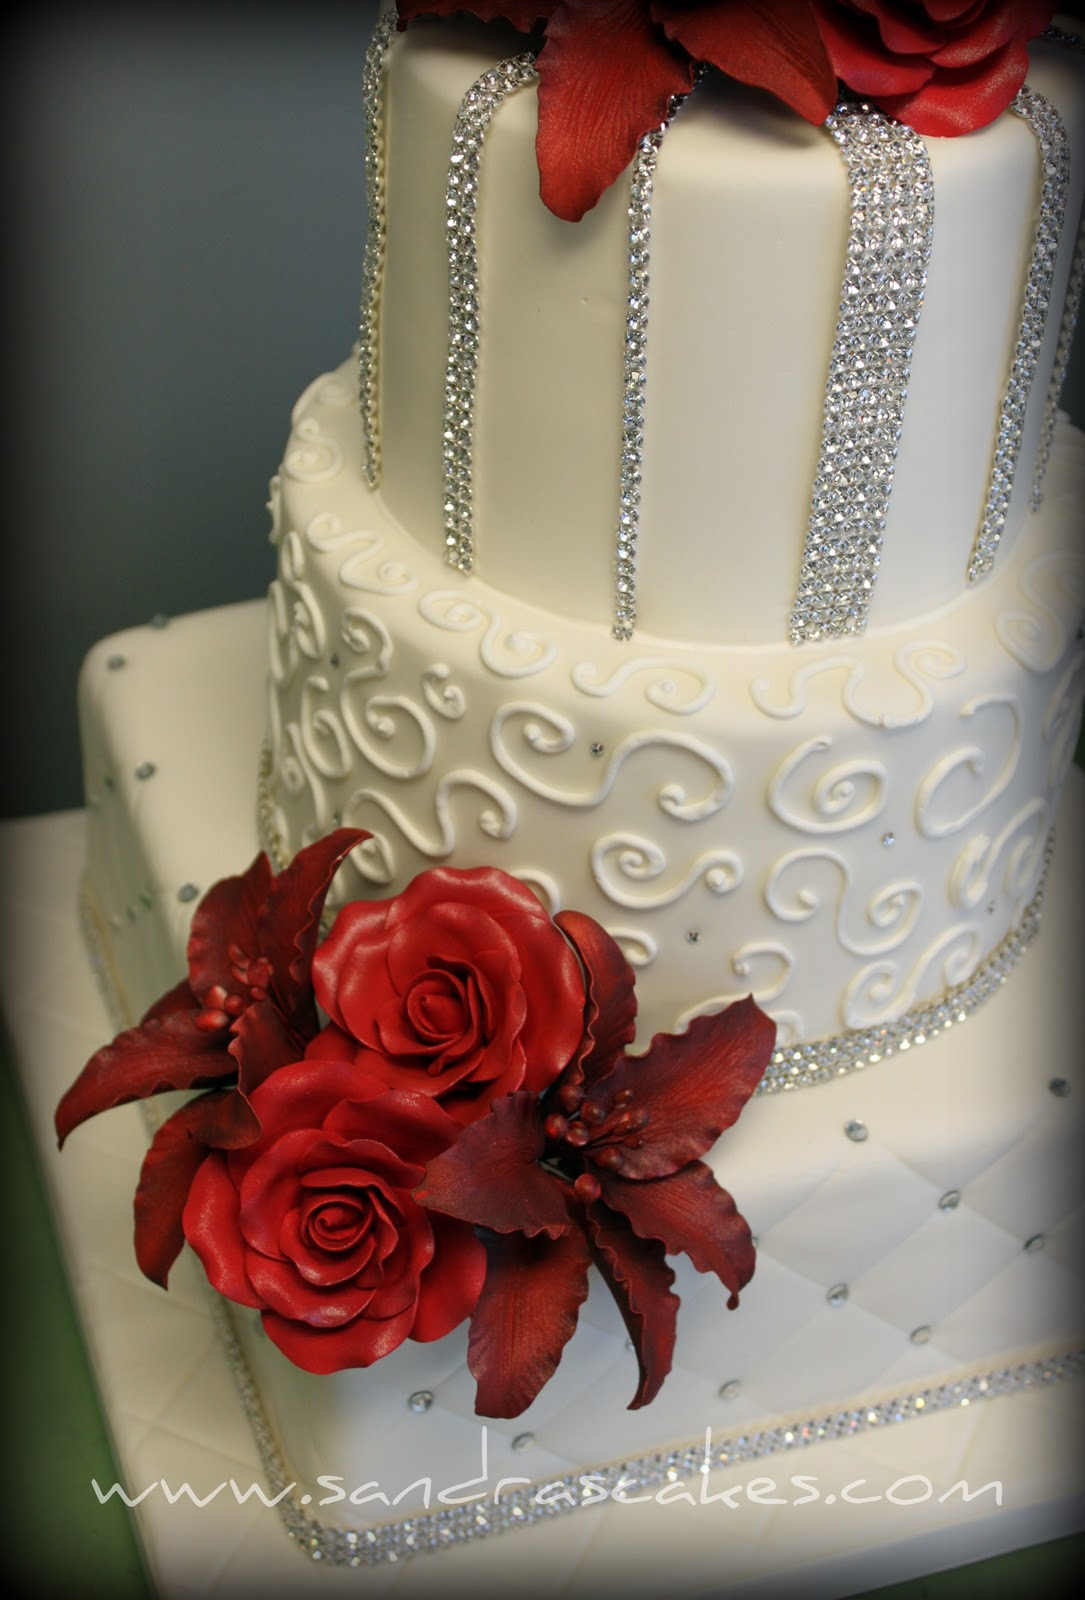 Exquisite Wedding Cakes
 Exquisite Wedding Cakes